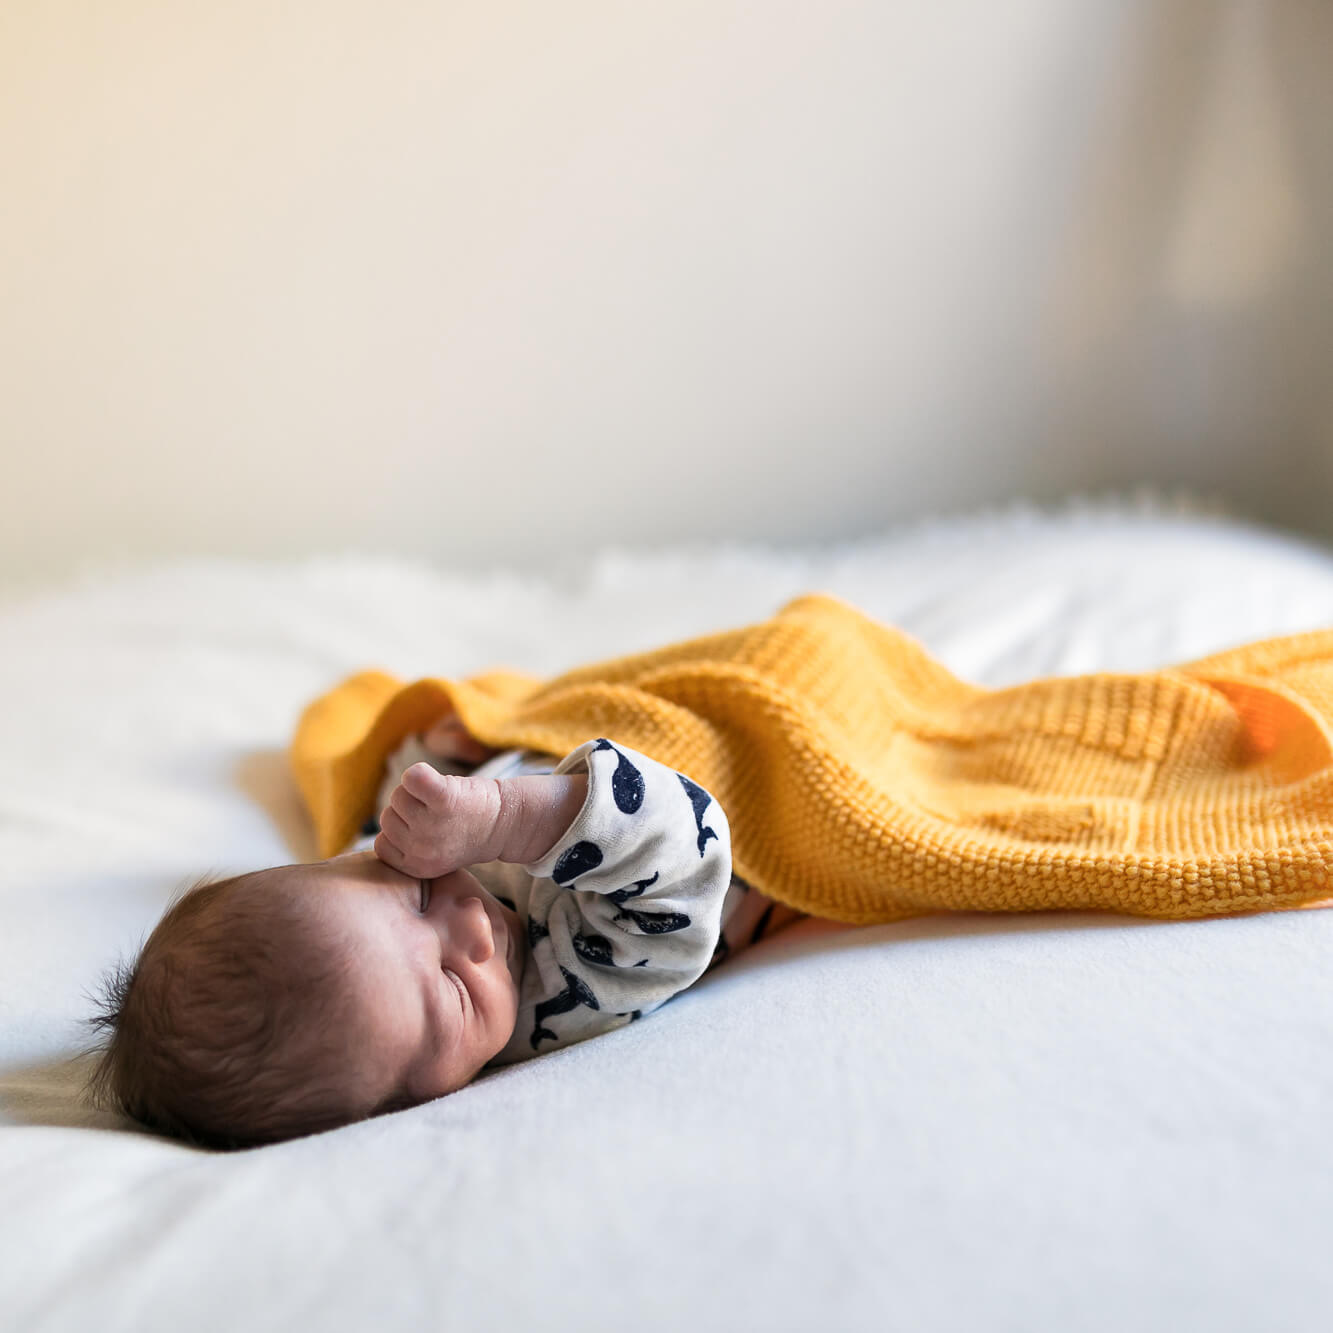 Photographe nouveau-né à domicile